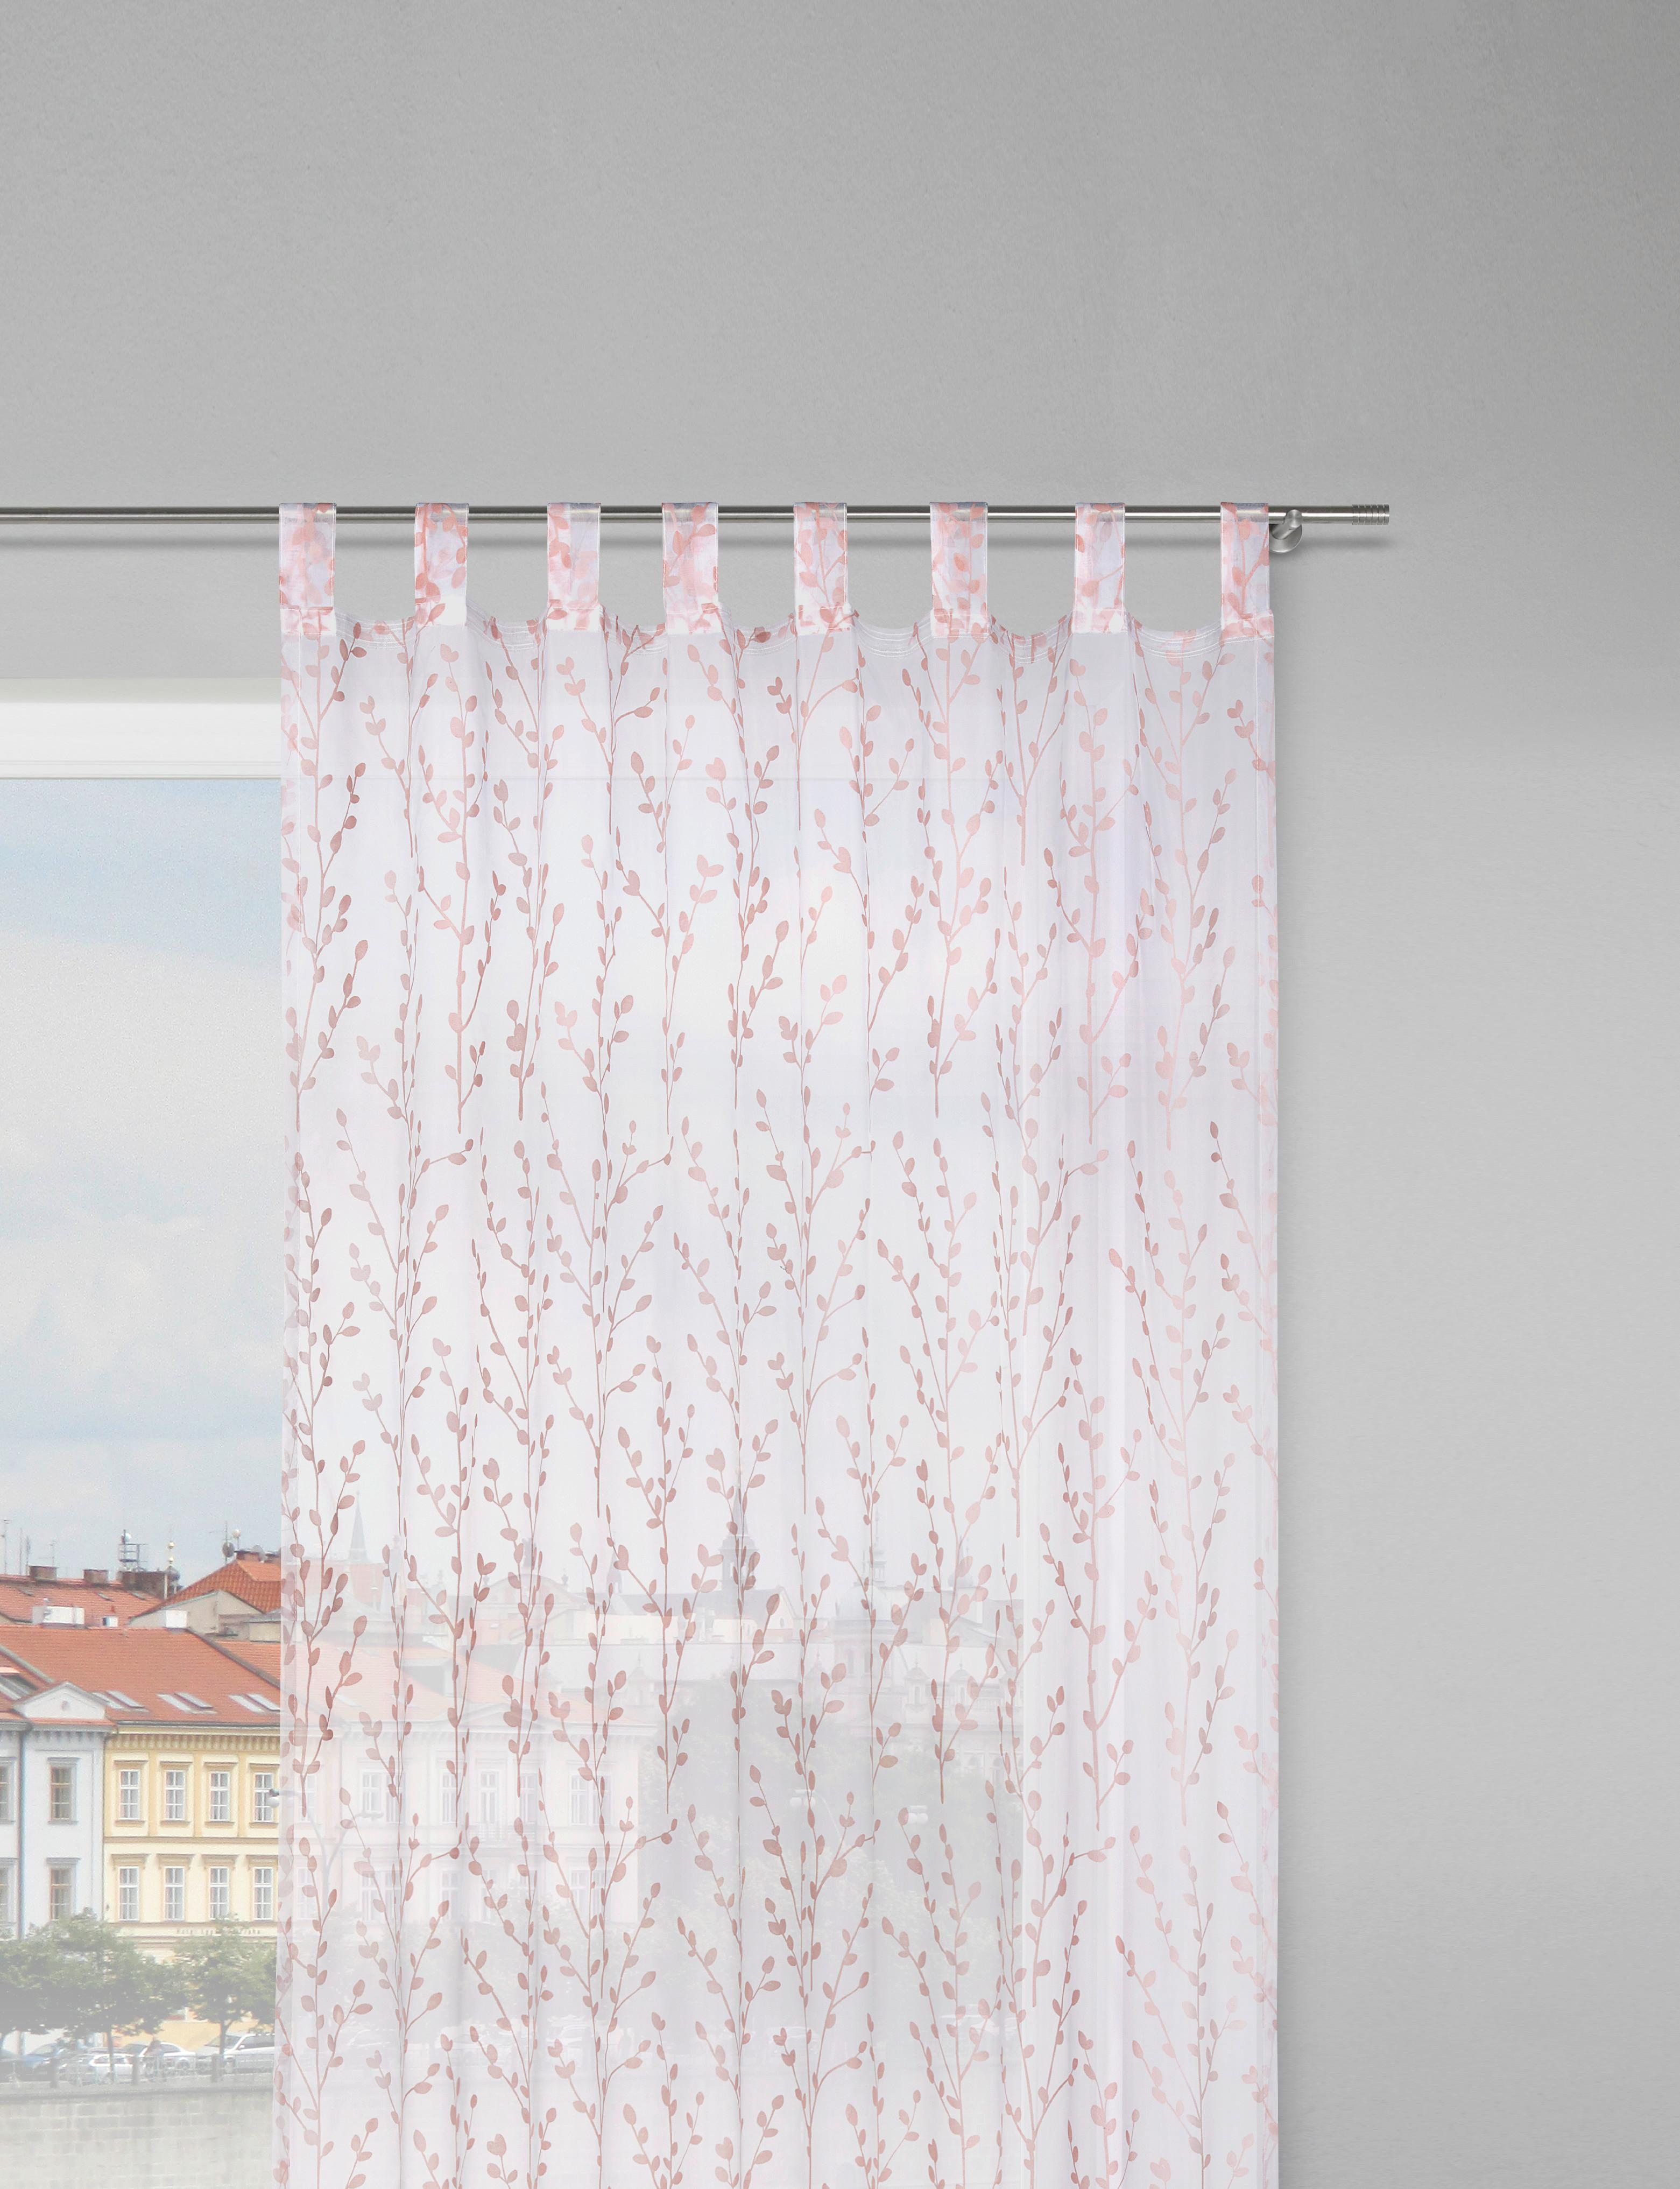 Füles Függöny Christiane 140/250cm - Fáradtrózsaszín, konvencionális, Textil (140/250cm) - Modern Living